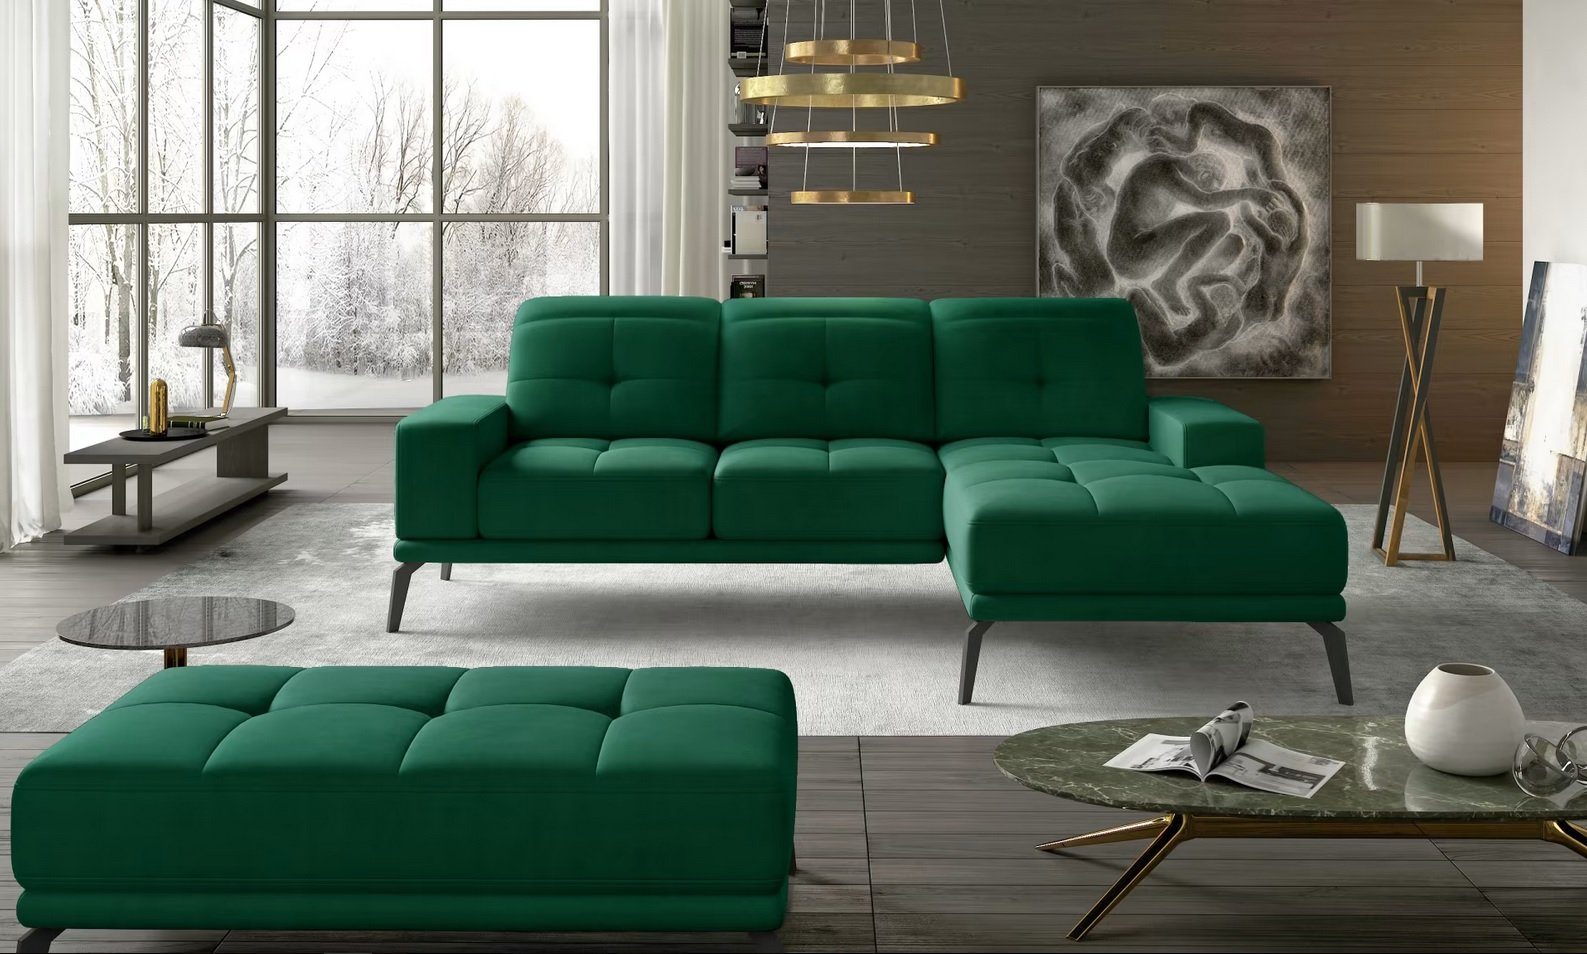 NEU Ecksofa L Form Sofa Couch Polster Sofas Wohnlandschaft Stoffsofa mit Hocker Sofort